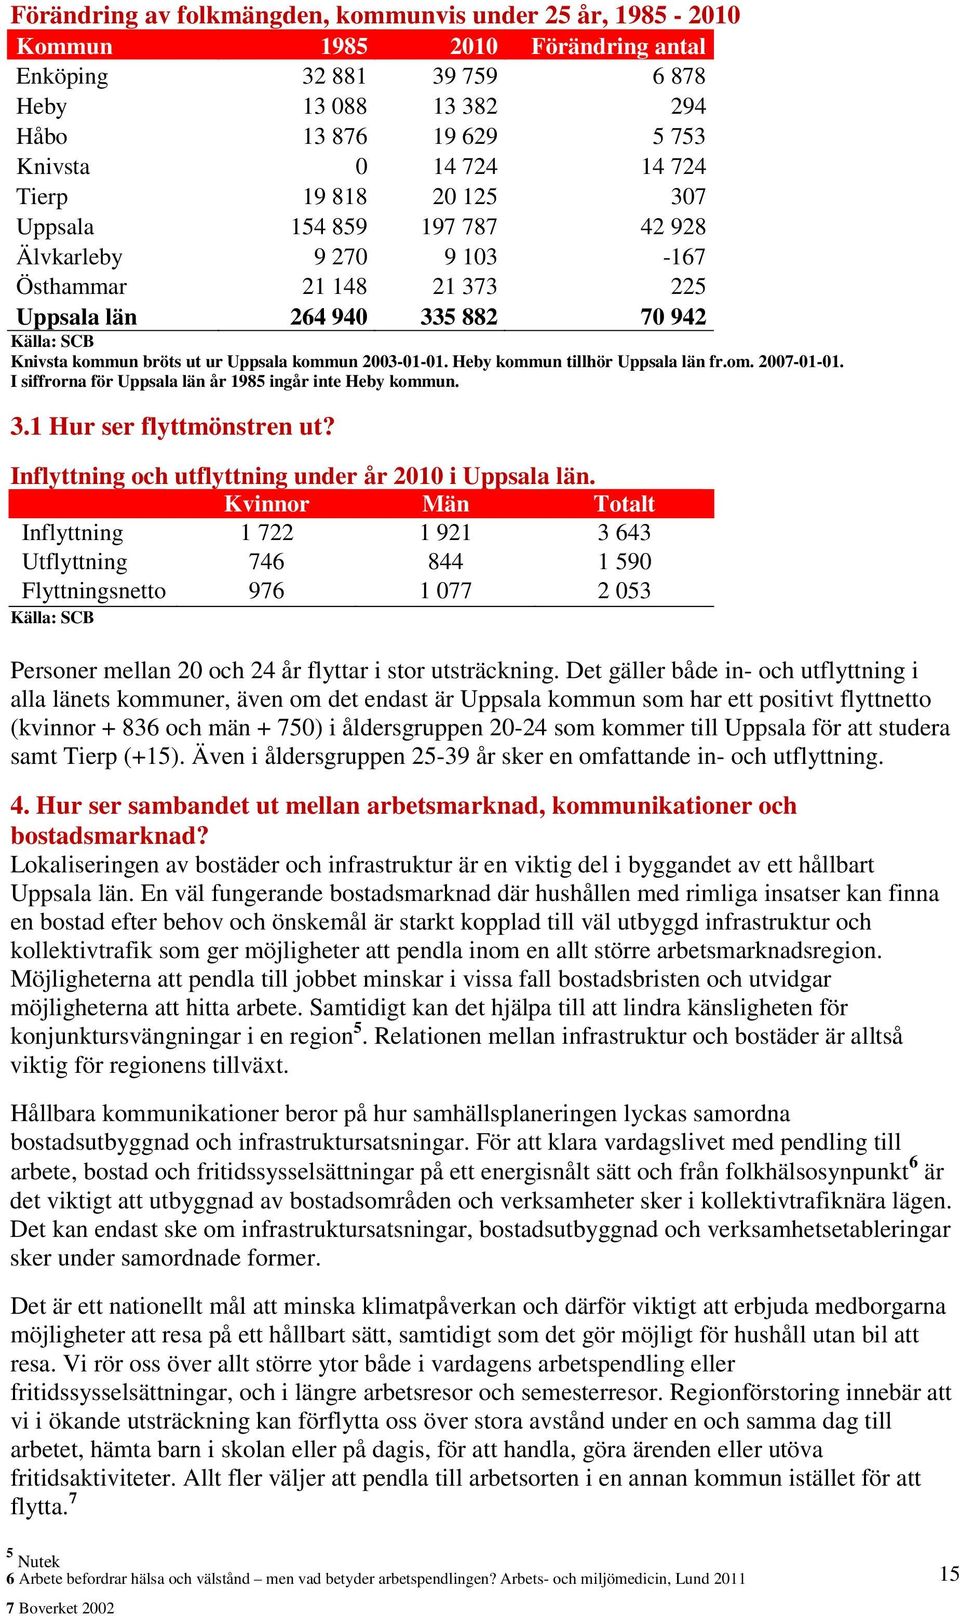 2003-01-01. Heby kommun tillhör Uppsala län fr.om. 2007-01-01. I siffrorna för Uppsala län år 1985 ingår inte Heby kommun. 3.1 Hur ser flyttmönstren ut?